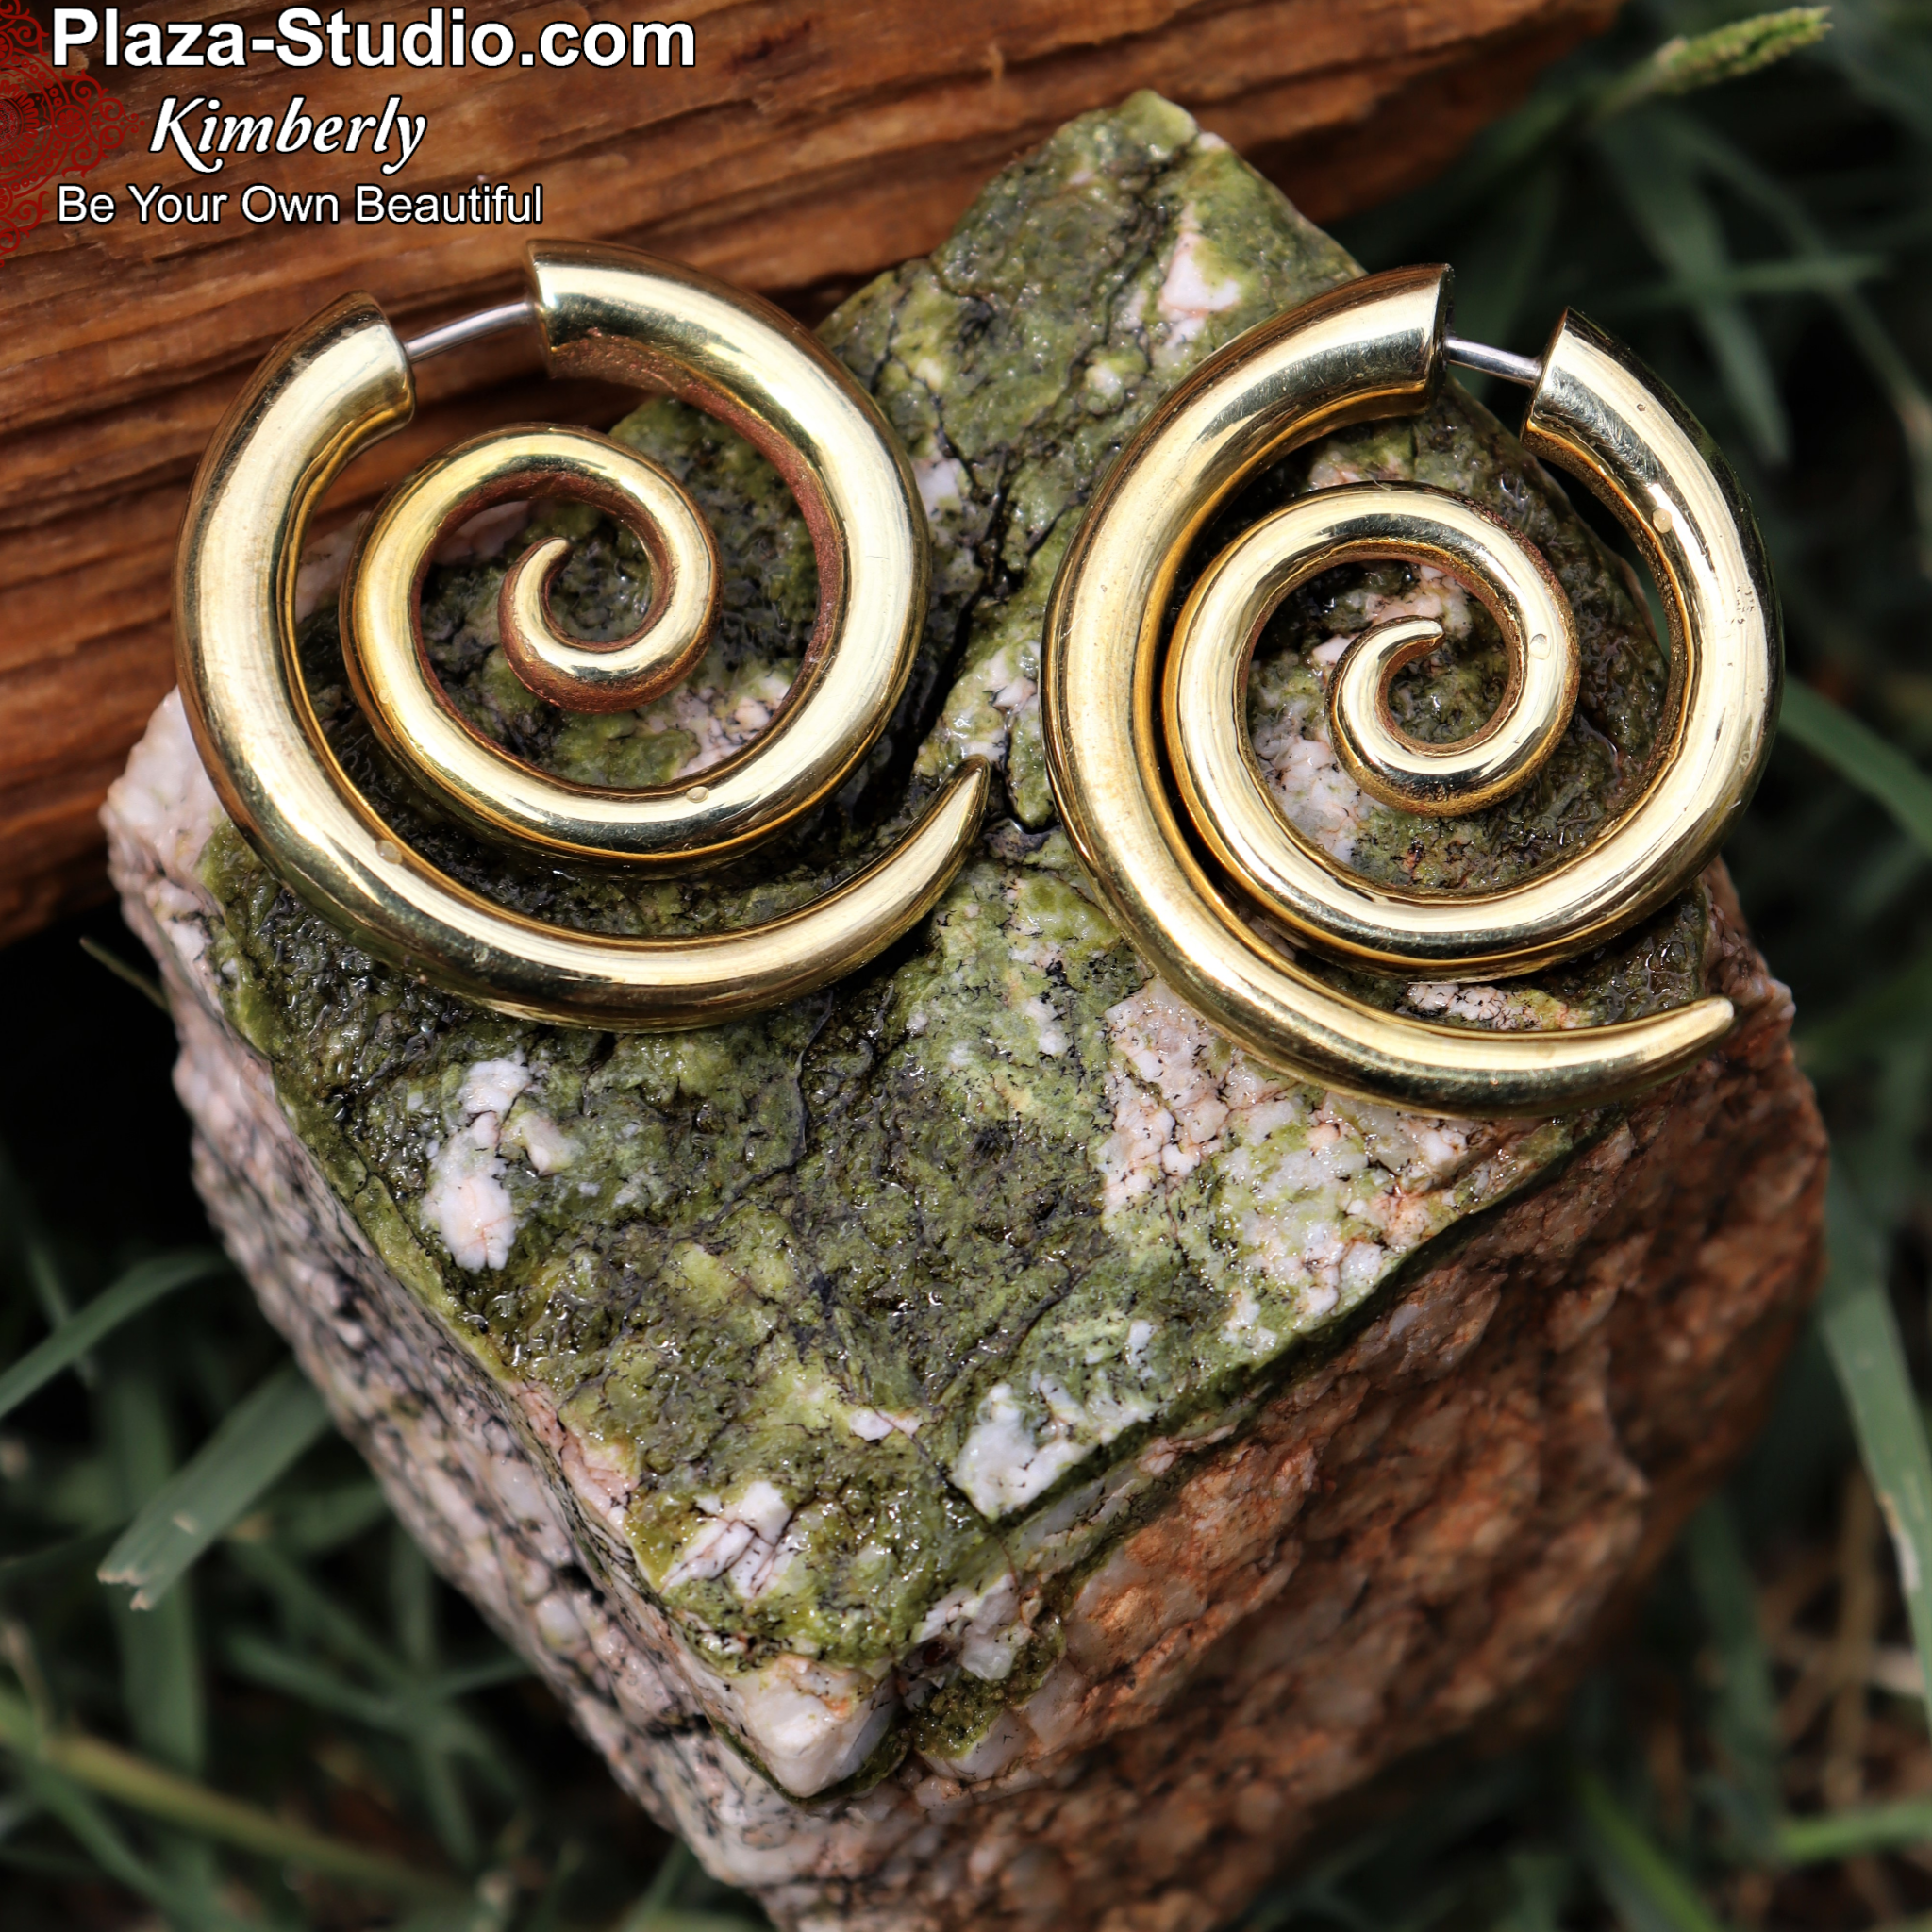  EXCEART 120 pcs Spiral Earrings Piercing Jewelry Brass